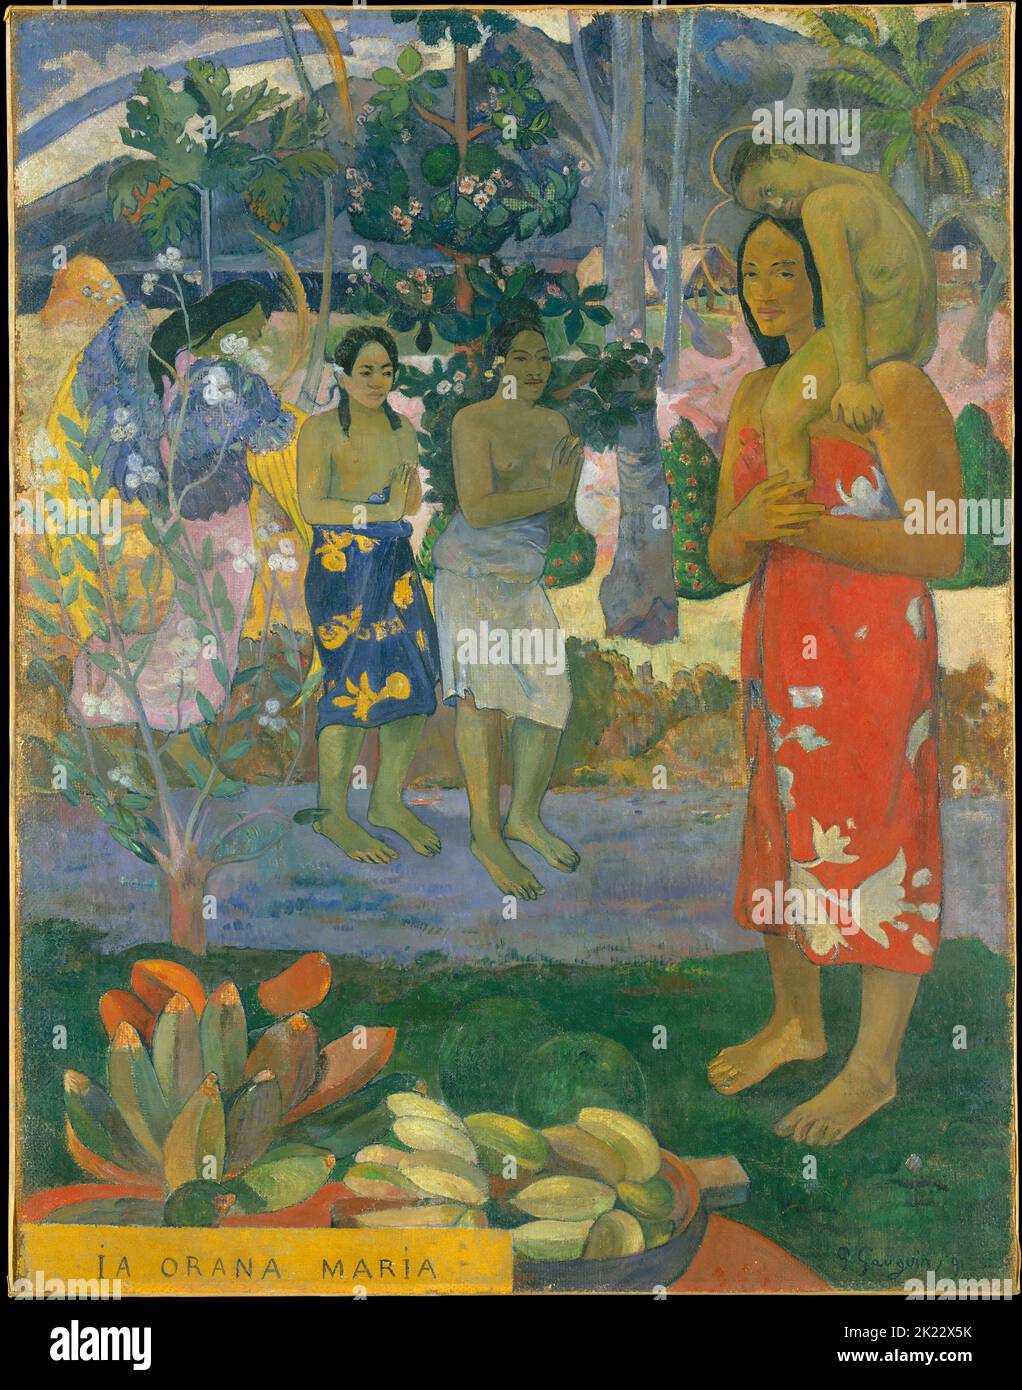 Tahiti: "IA Orana Maria" (Ave Maria). Dipinto ad olio su tela di Paul Gauguin (7 giugno 1848 - 8 maggio 1903), 1891. Paul Gauguin è nato a Parigi nel 1848 e trascorre parte della sua infanzia in Perù. Ha lavorato come broker con poco successo, e ha sofferto di periodi di grave depressione. Dipinse anche. Nel 1891, Gauguin, frustrato per mancanza di riconoscimento in patria e per mancanza di risorse finanziarie, navigò verso i tropici per sfuggire alla civiltà europea e a "tutto ciò che è artificiale e convenzionale”. Il suo tempo lì, in particolare a Tahiti e alle Isole Marquesas, è stato oggetto di grande interesse. Foto Stock